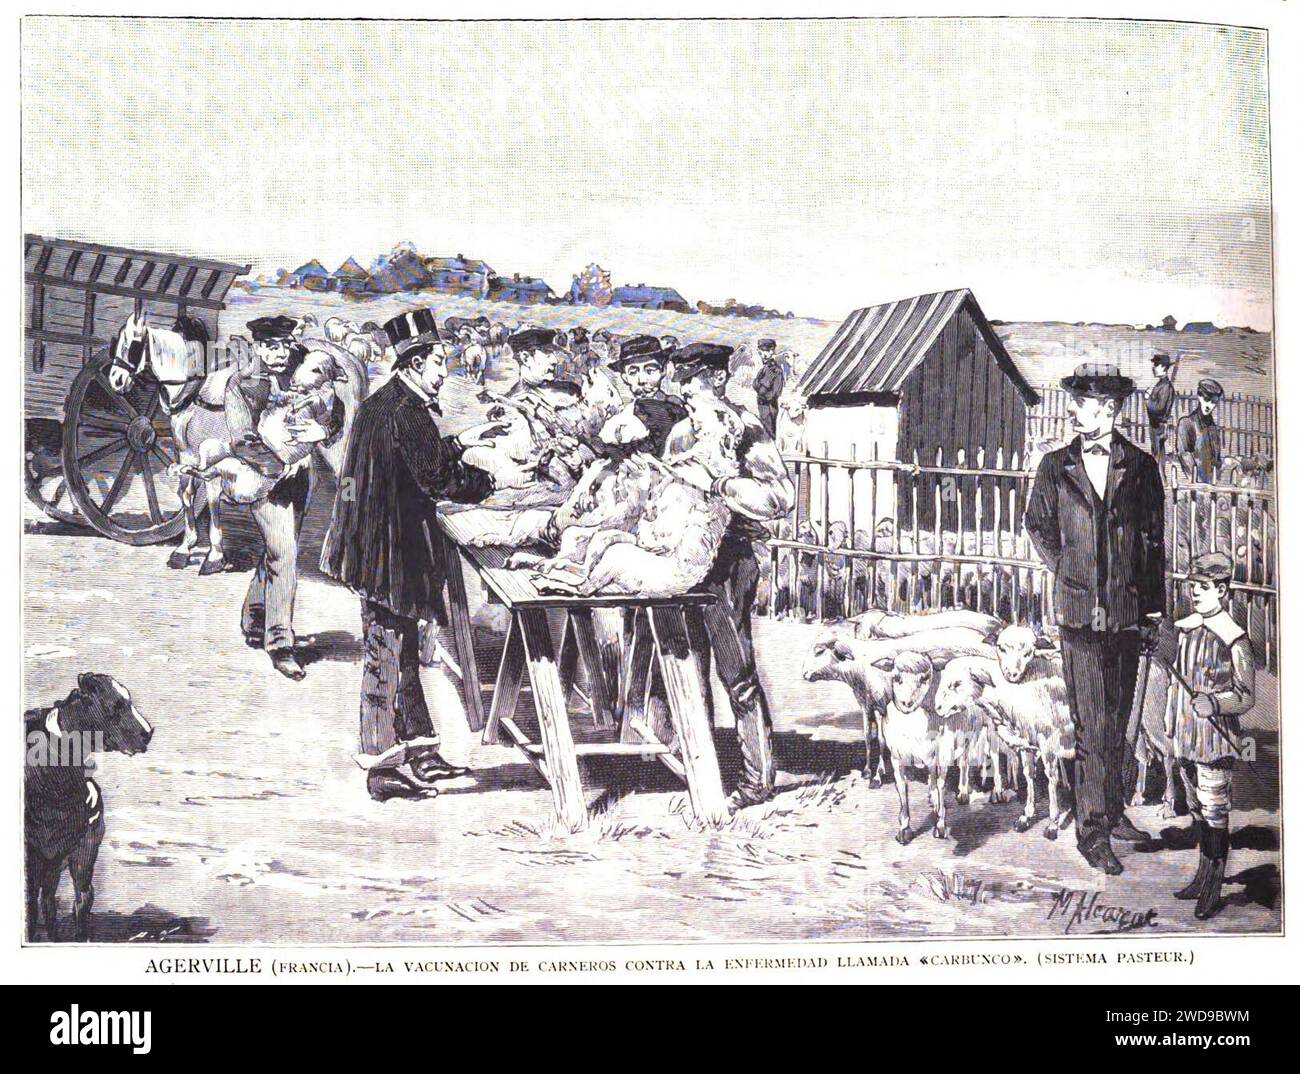 1883-11-15, La Ilustración Española y Americana, Agerville (Francia).—La vacunación de carneros contra la enfermedad llamada «carbunco» (sistema Pasteur). Stock Photo